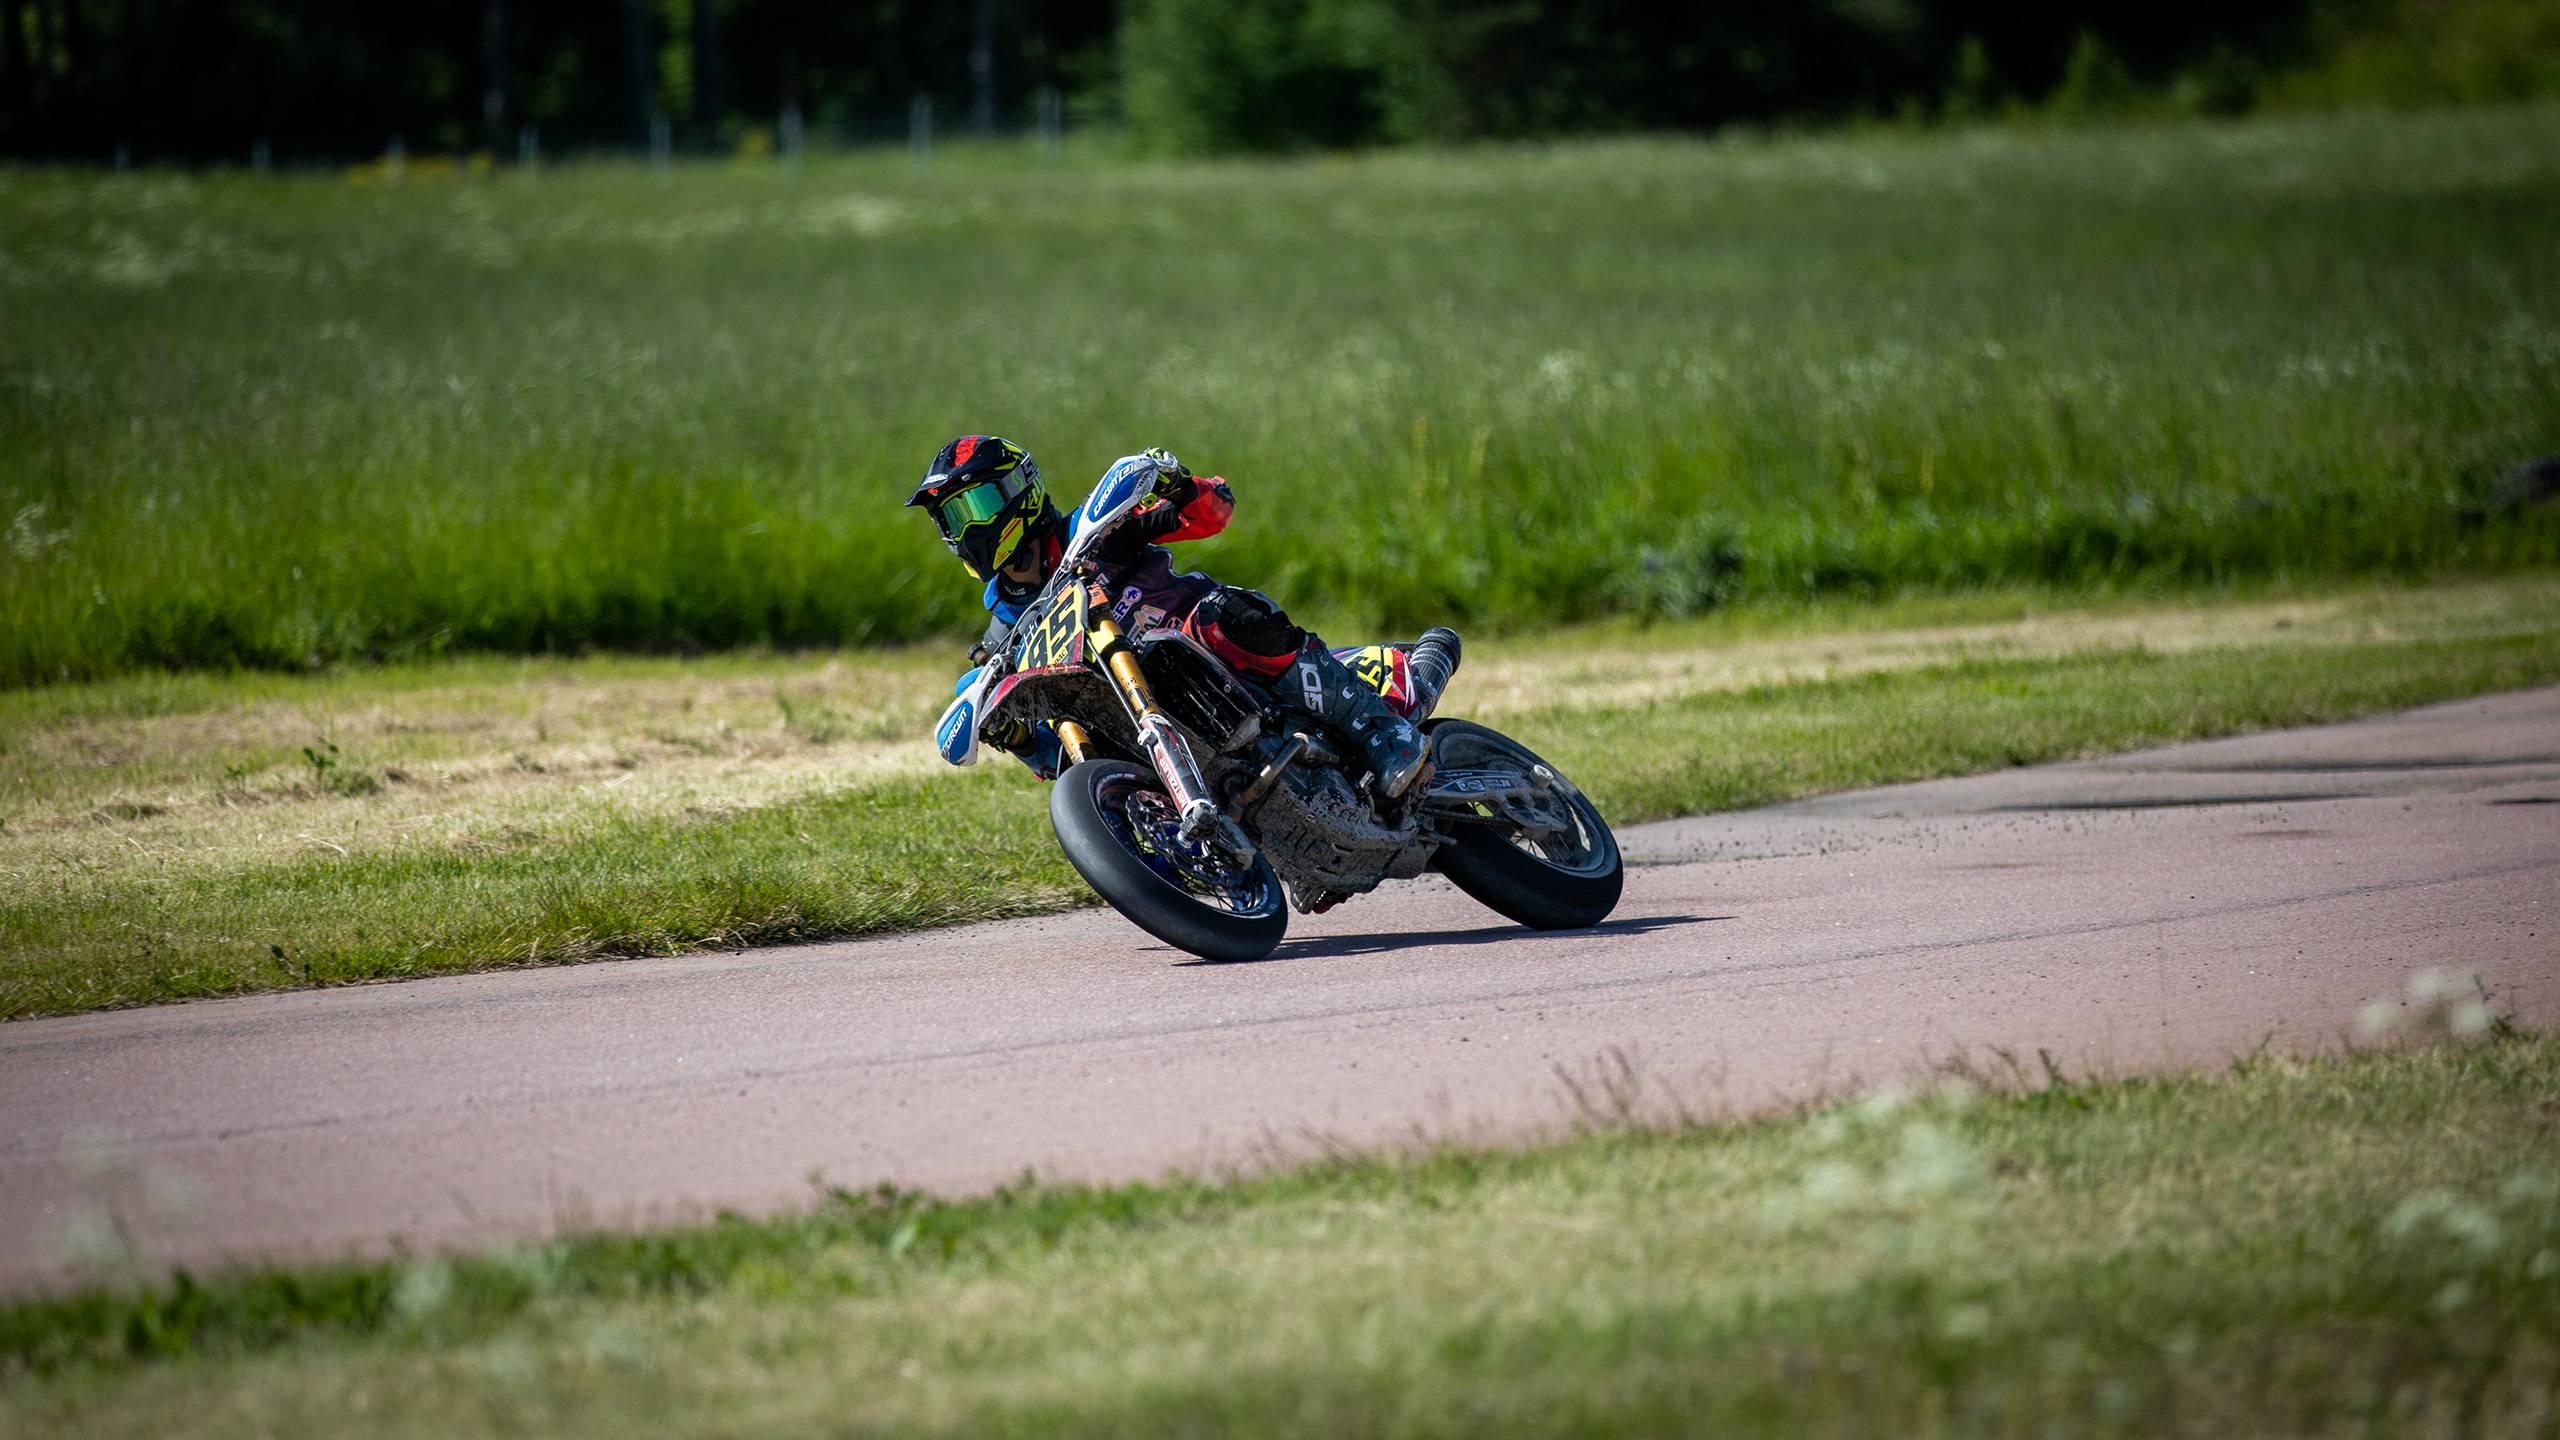 En supermotoförare på sin motorcykel på en väg mellan två gröna gräsfält. Fotograf: Maeva Sponbergs